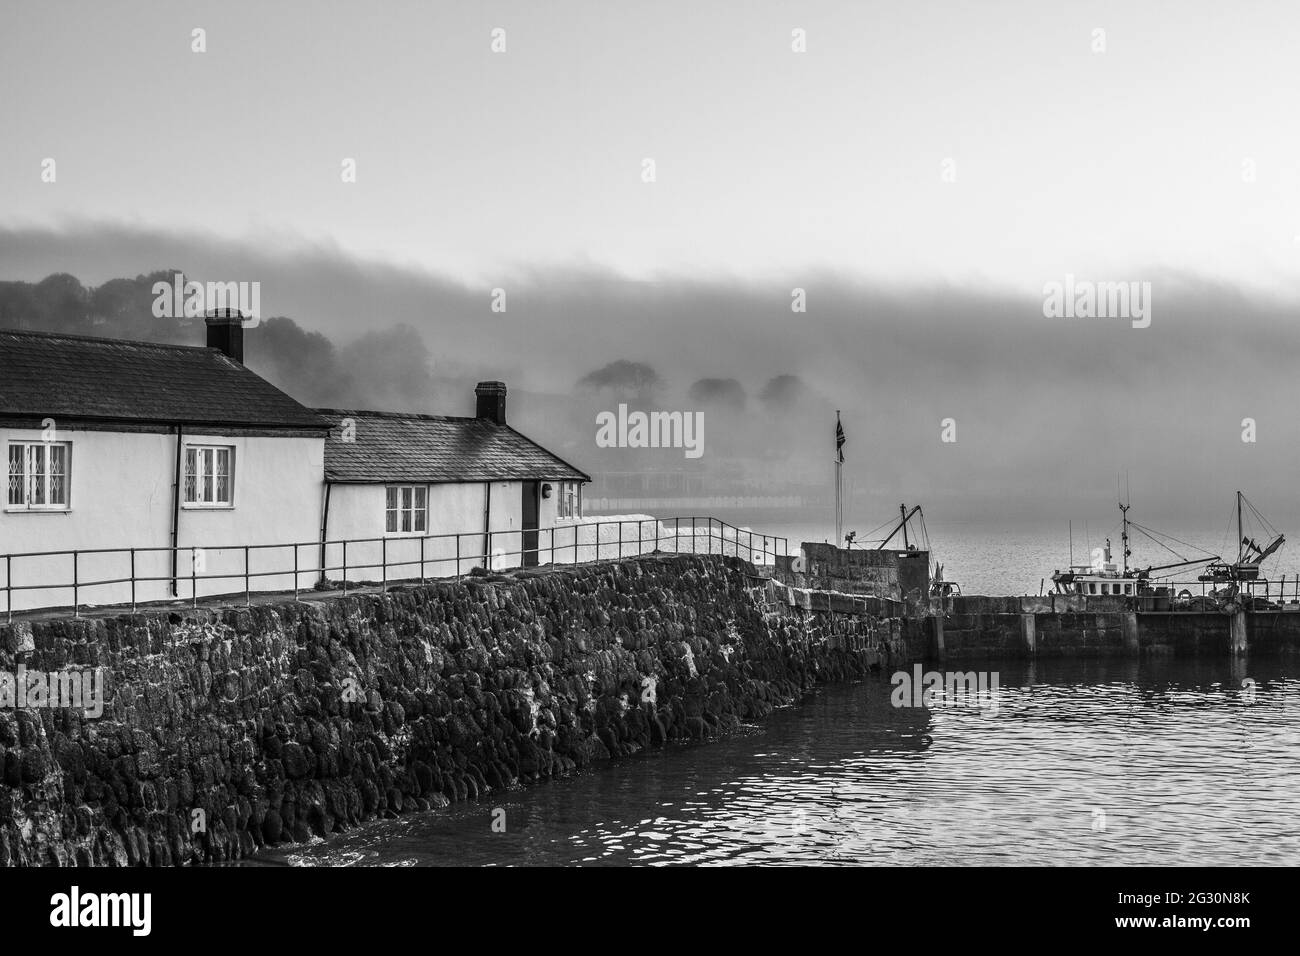 Immagine in bianco e nero scattata all'alba, al porto di Cobb, a Lyme Regis in Dorset. Scena della donna tenente francese. Spazio di copia Foto Stock